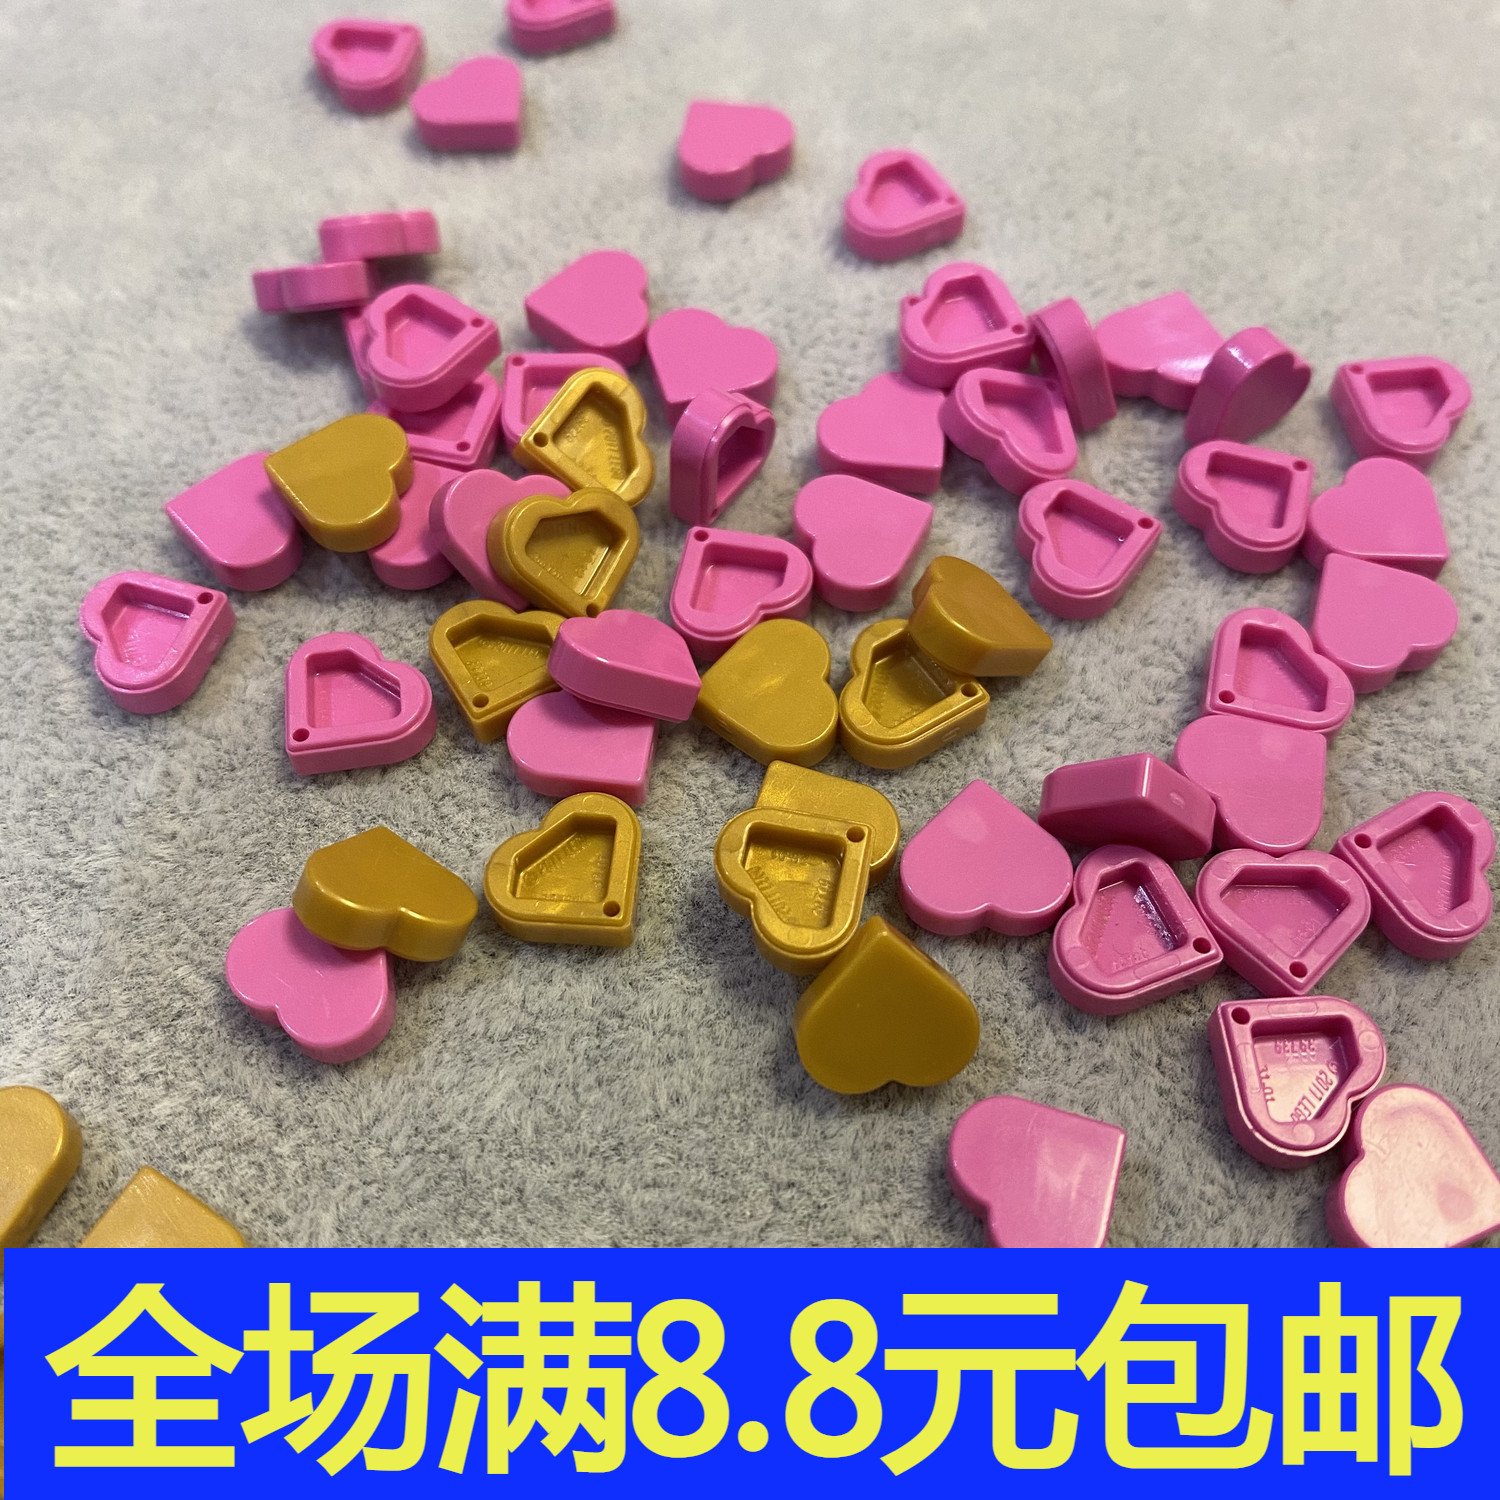 补件MOC 39739 小颗粒积木中国国产零配件 爱心光面板 心形桃红